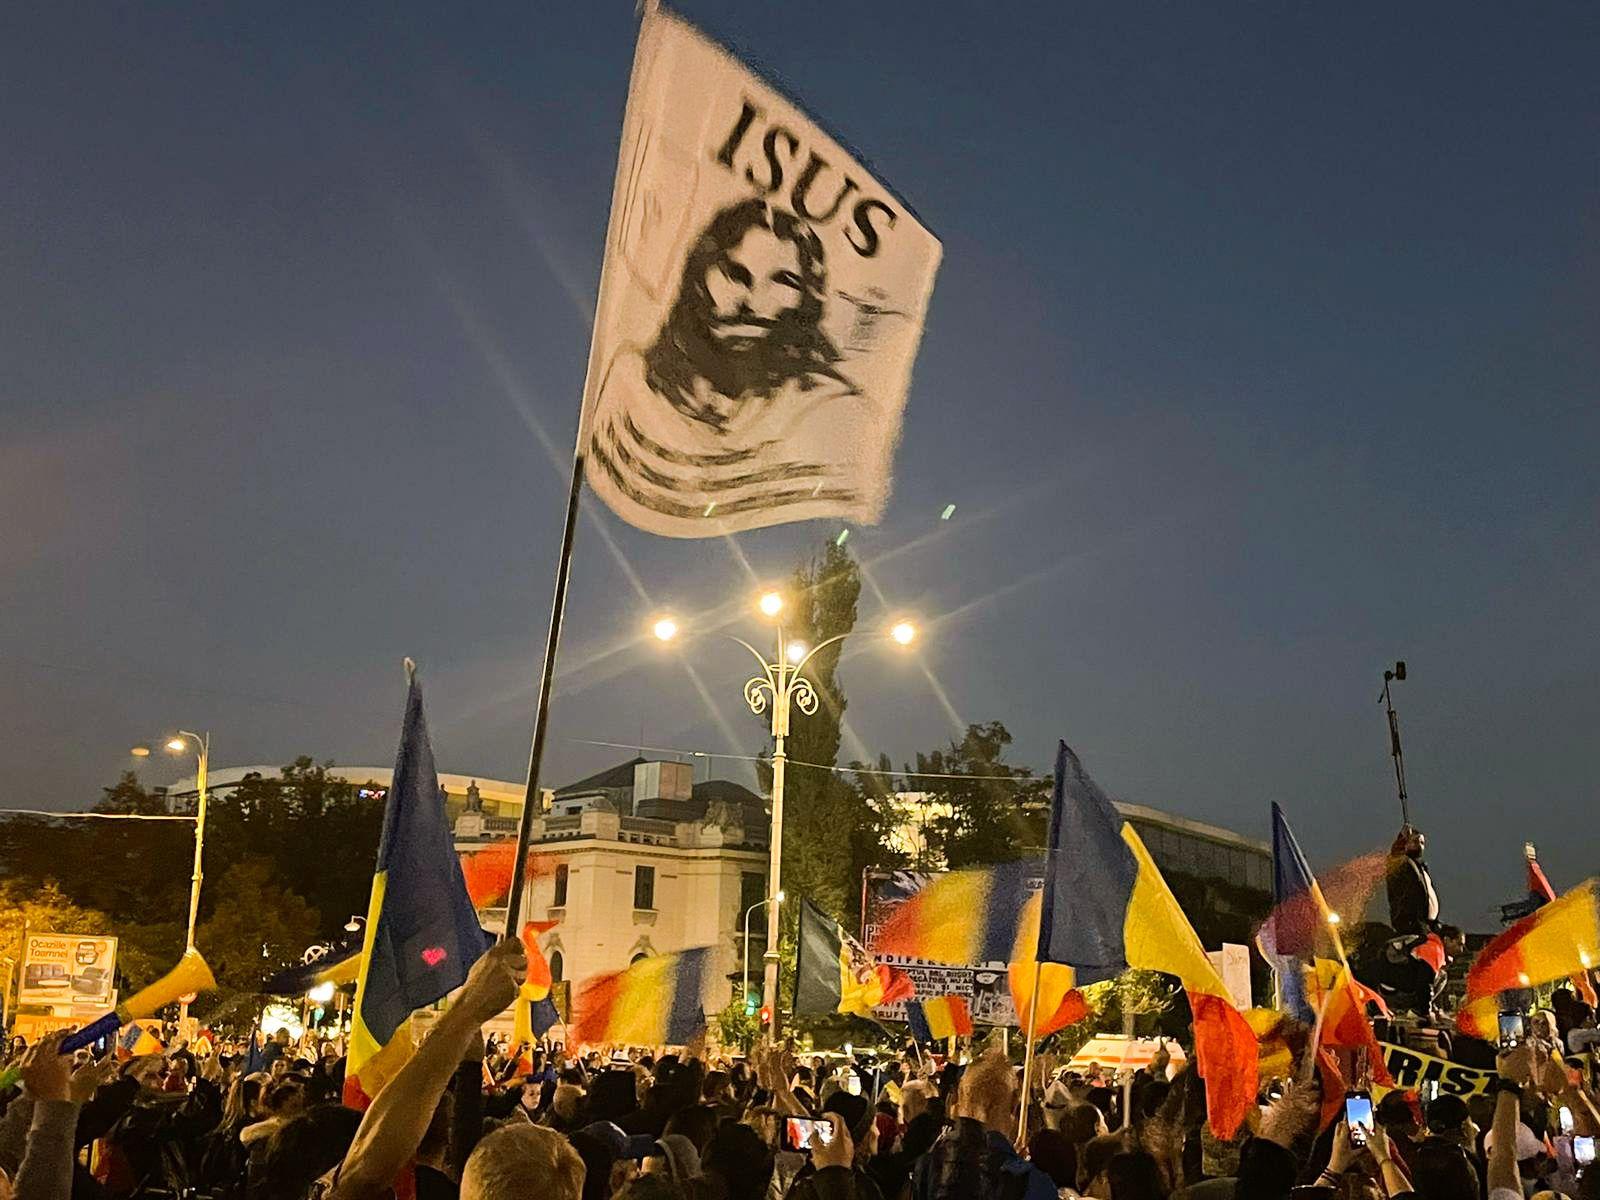 Până la „reformarea” Uniunii Europene conform dorințelor românilor din bazinul electoral conservator, radicalizarea este tot mai prezentă. Foto: Alex Olaru